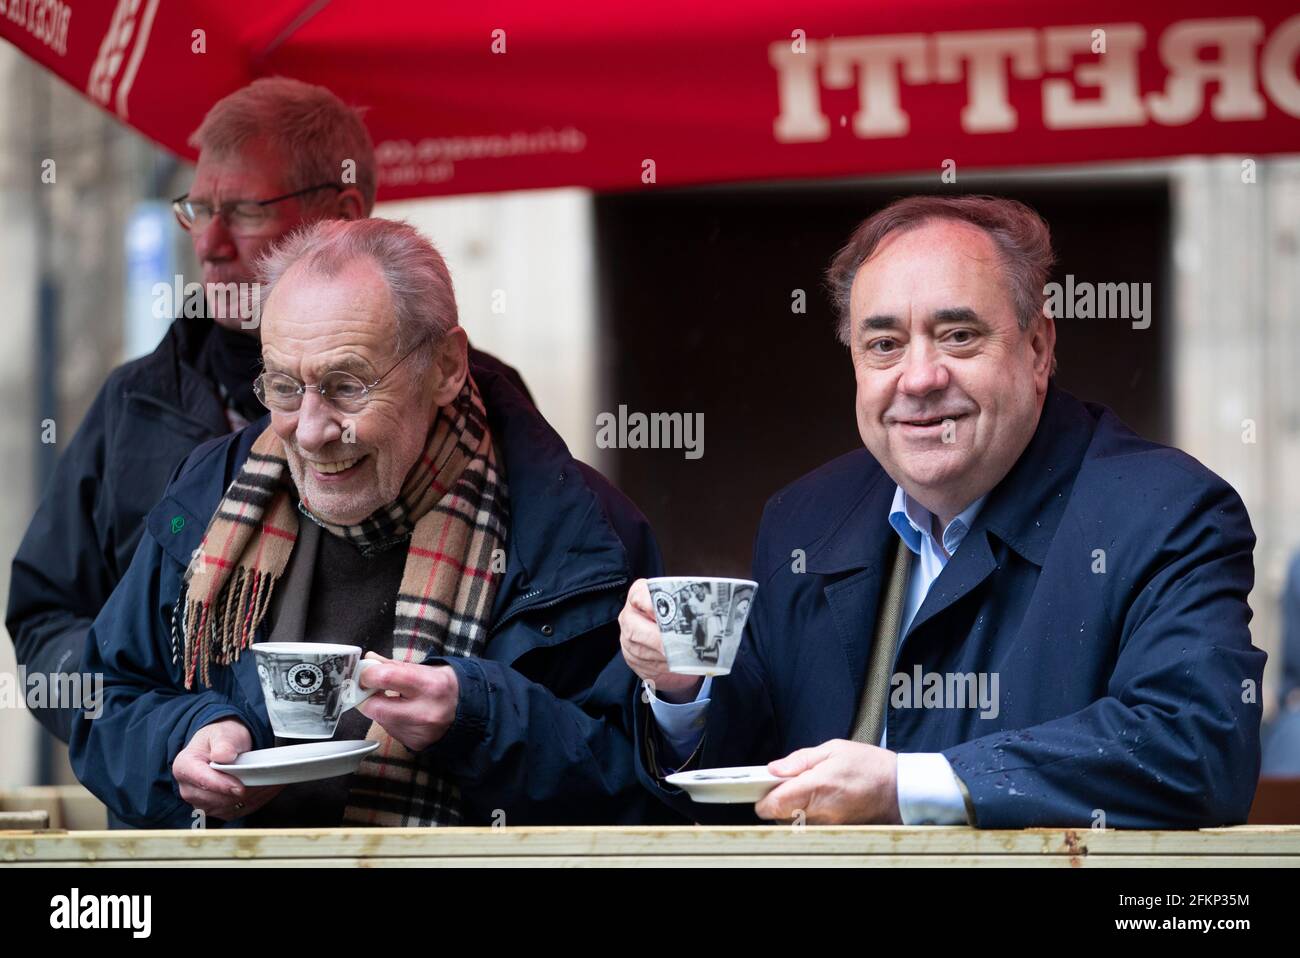 El líder del Partido Alba, Alex Salmond, con el ex ministro laborista Les Huckfield (izquierda) durante una visita al Salón Escotsman de Edimburgo en el sendero de la campaña para las próximas elecciones parlamentarias escocesas el 6 de mayo de 2021. Fecha de la foto: Lunes 3 de mayo de 2021. Foto de stock